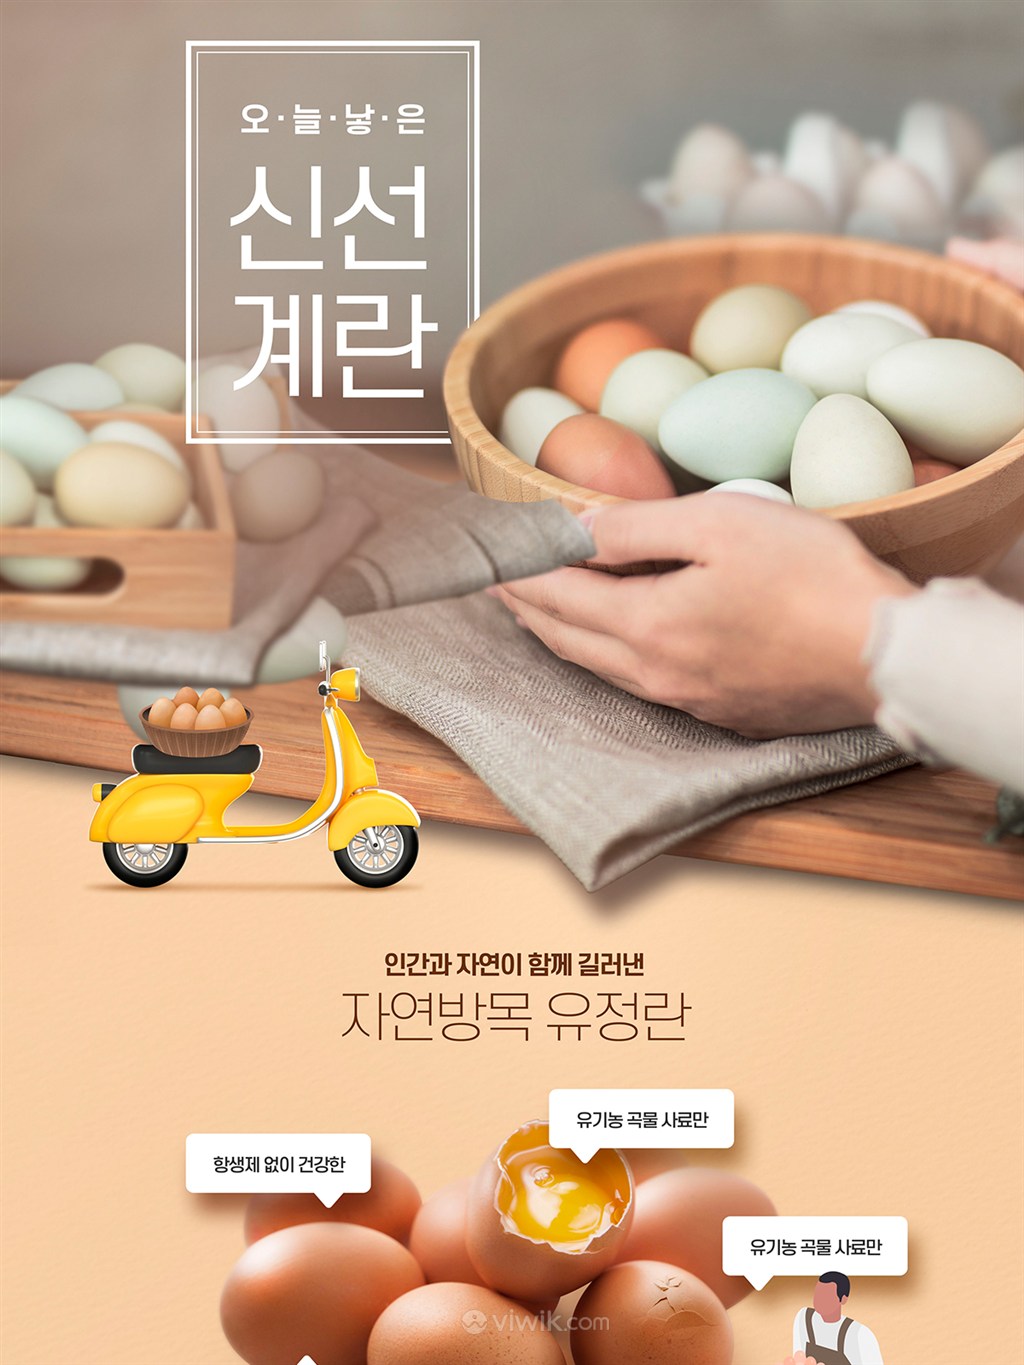 韩国新鲜鸡蛋美食打折促销网页设计